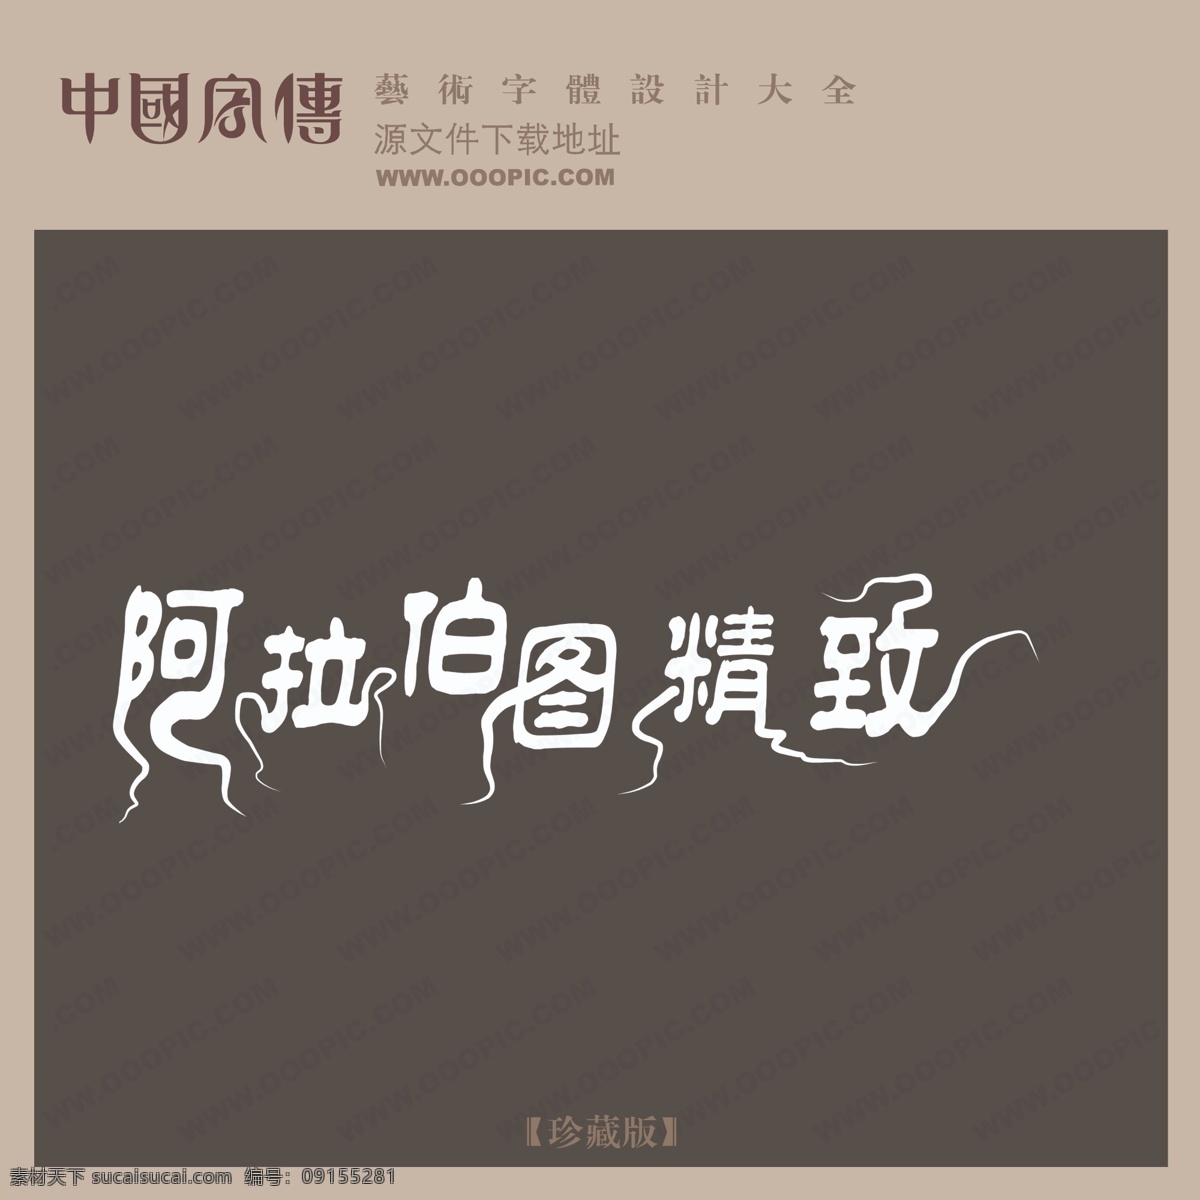 创意 美工 艺术 字 中国字体设计 中文 现代艺术 阿拉 伯图 精致 中国 字体 阿拉伯图精致 psd源文件 文件 源文件